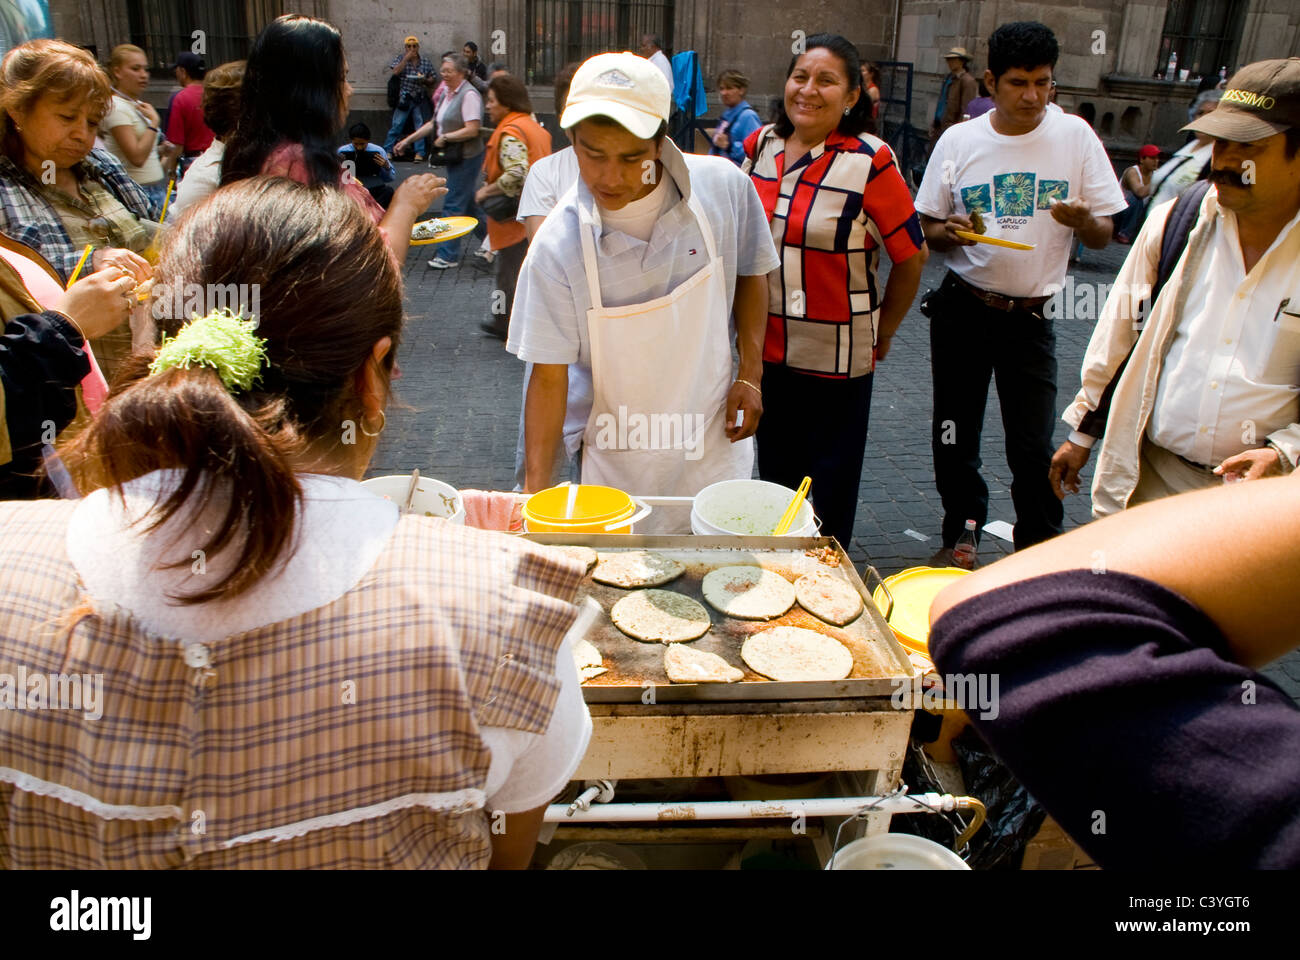 Mexico city. Street food. Stock Photo